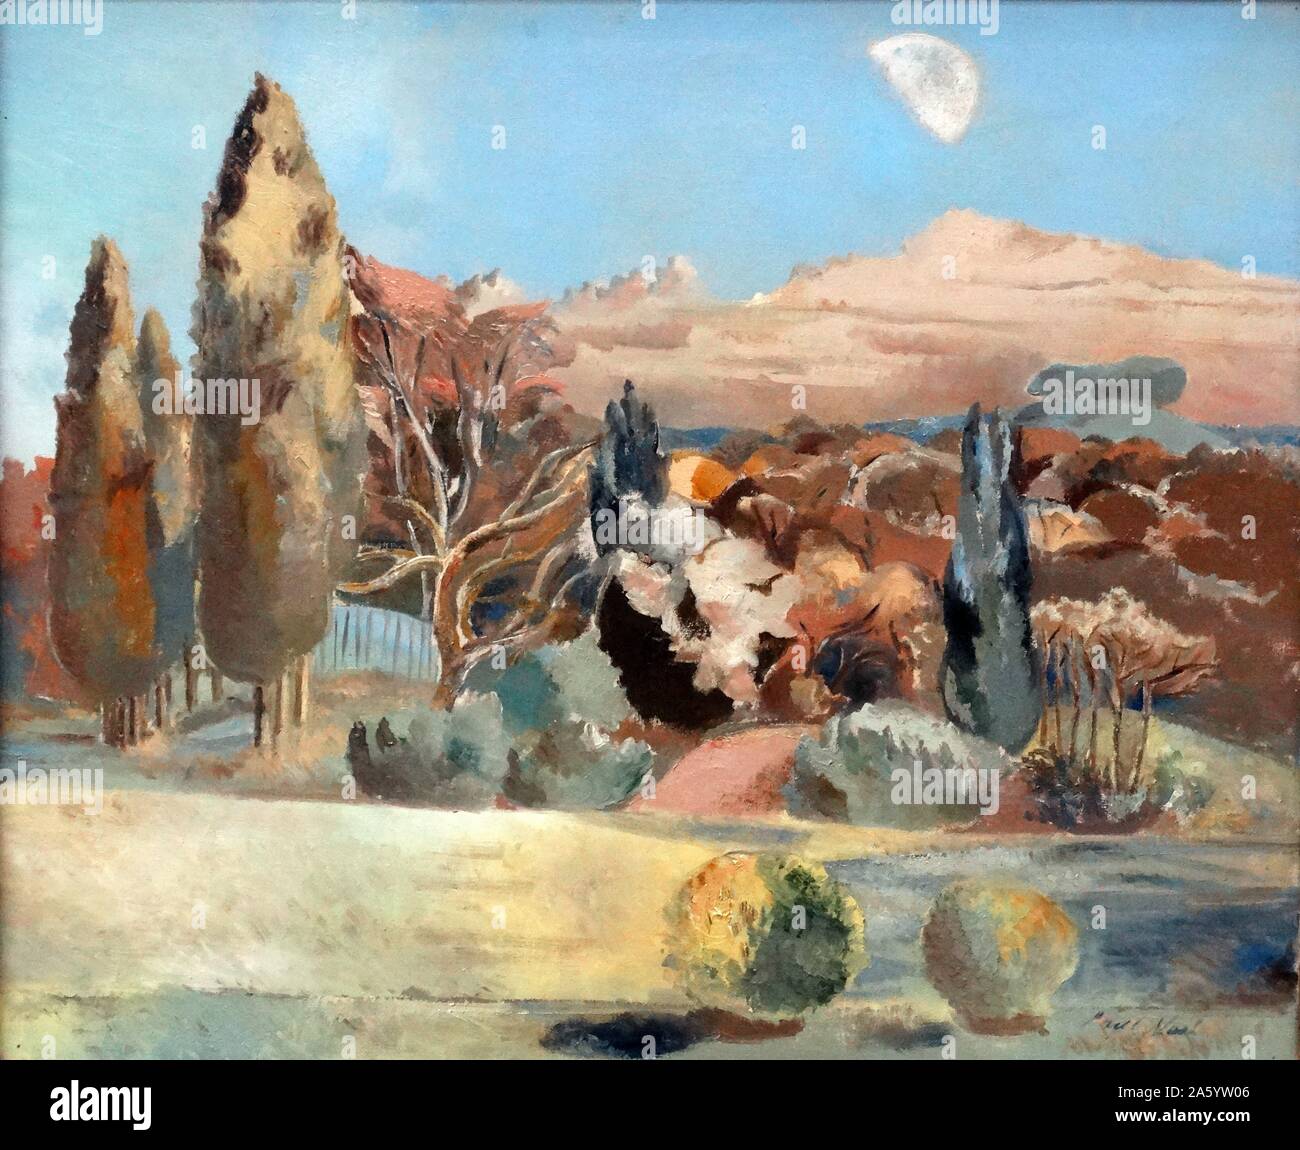 Paul Nash (1889-1946) Landschaft des ersten Mondviertel 1943. Öl auf Leinwand. Malerei Basis auf der Ansicht von s Künstlerhaus in Boar es Hill, in der Nähe, Oxford, England Stockfoto